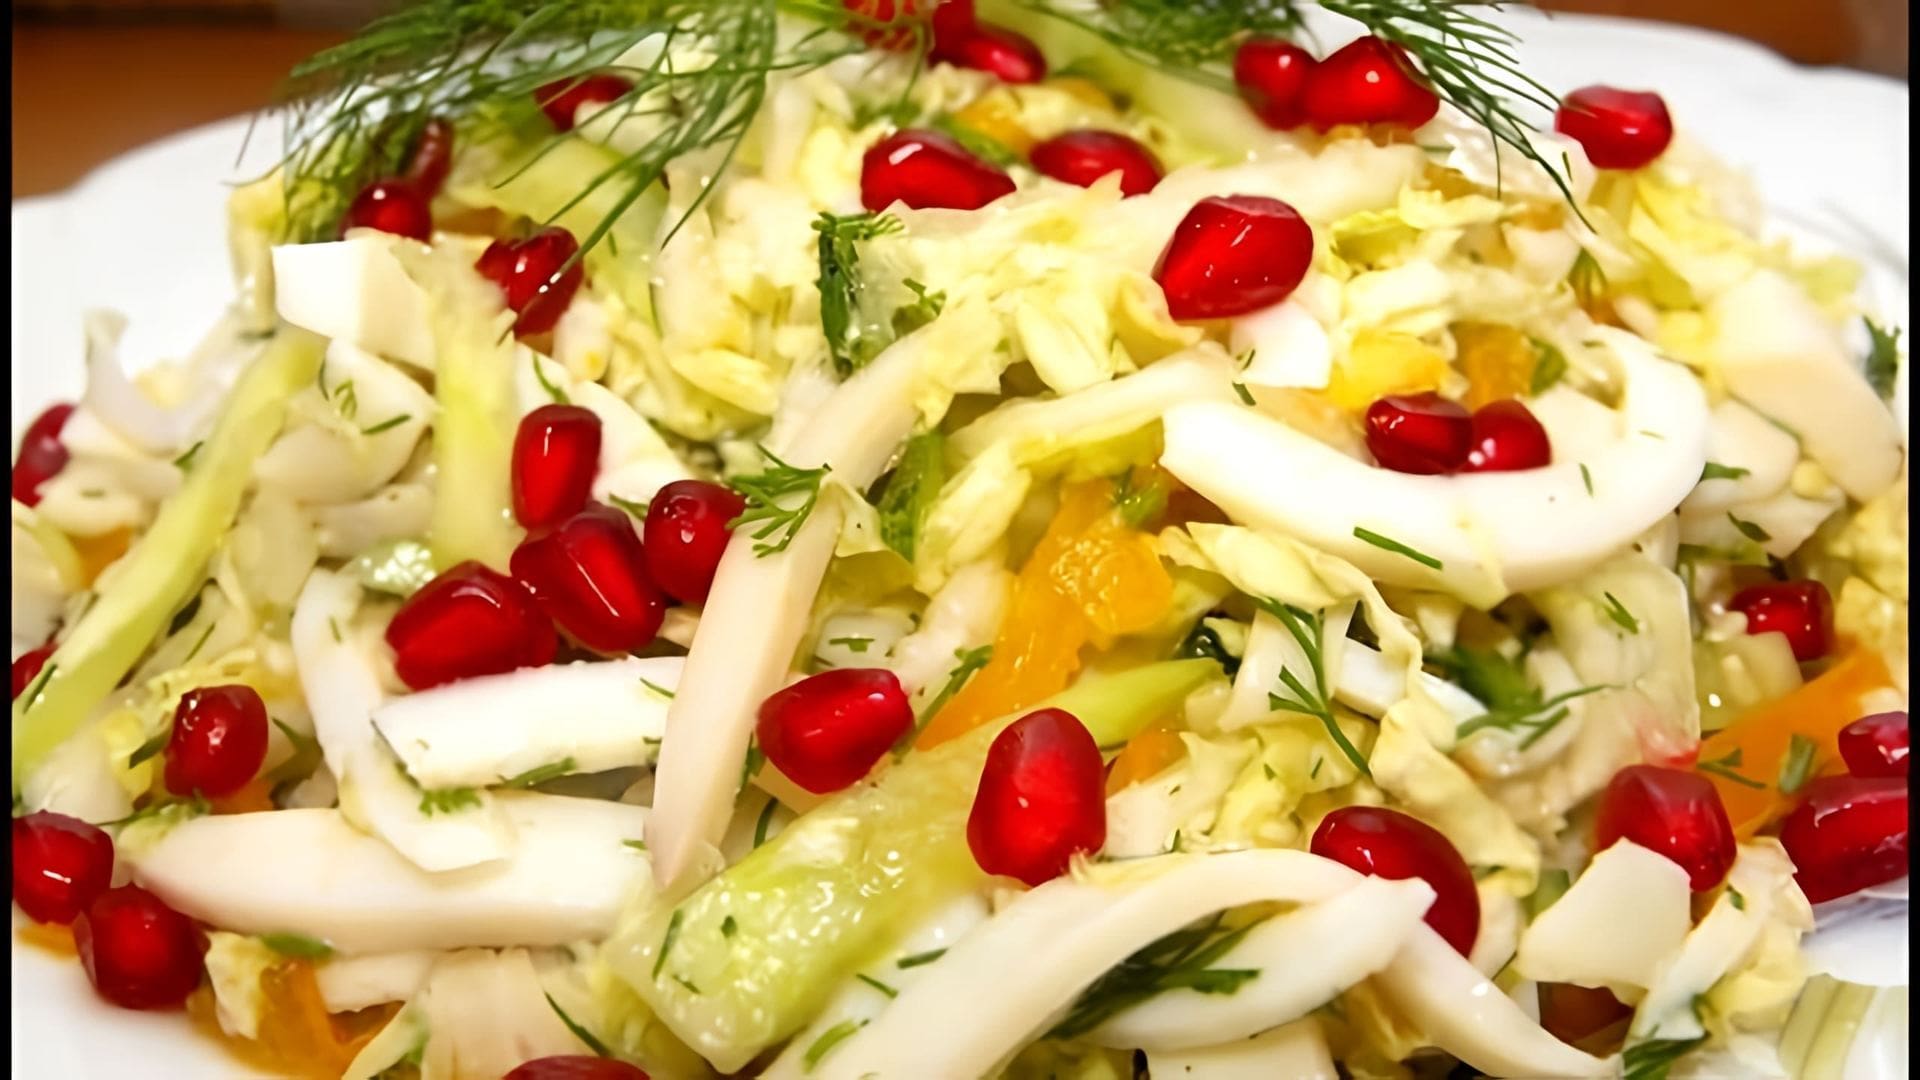 В этом видео демонстрируется процесс приготовления салата из пекинской капусты, куриной грудки, кальмаров, помидоров, болгарского перца и яблока